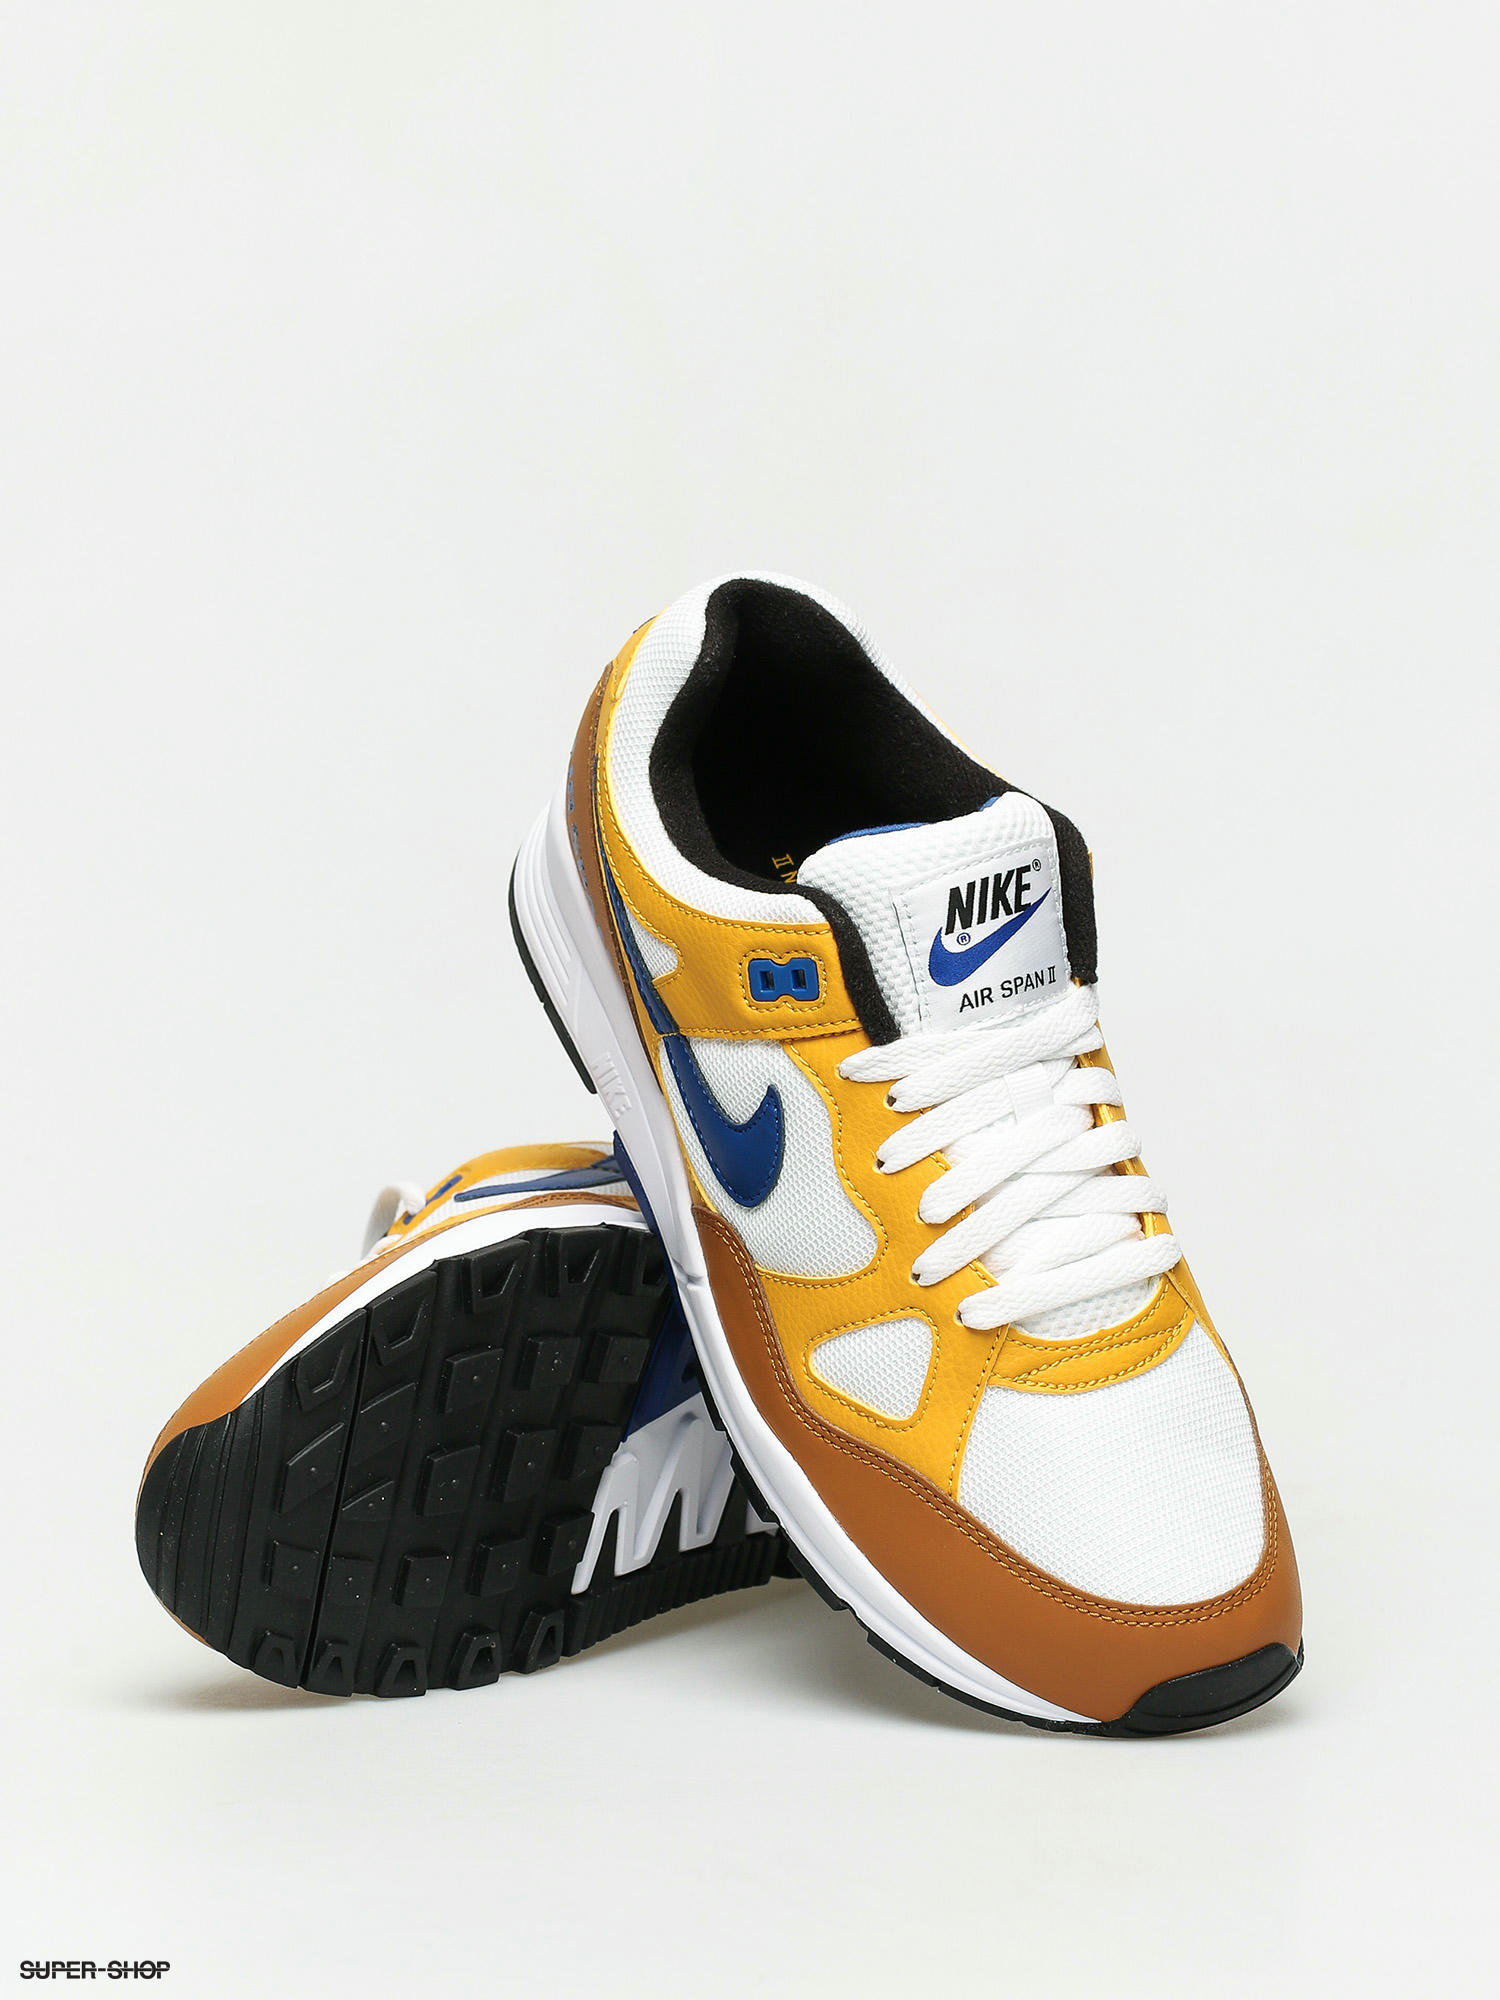 heilig Geestig Afwijken Nike Air Span II Shoes (yellow ochre/indigo force desert ochre)